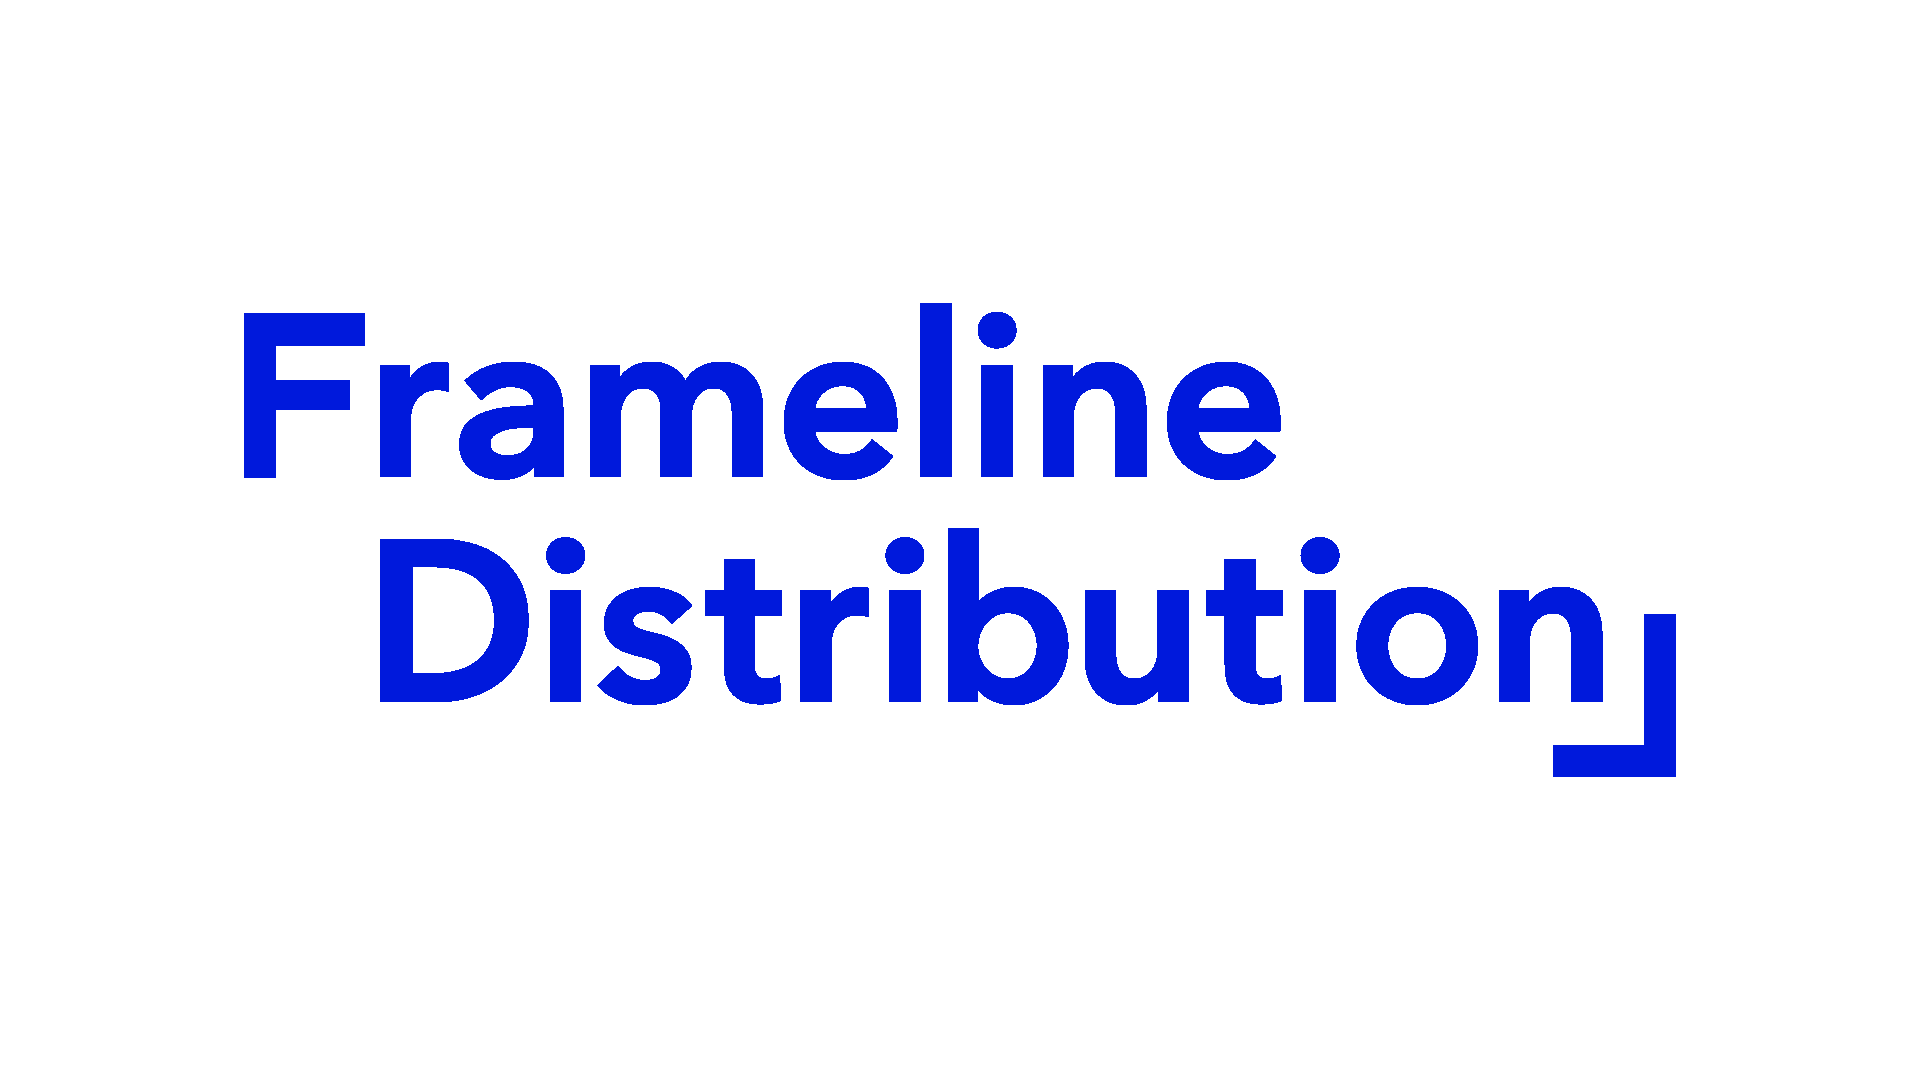 Frameline Distribution